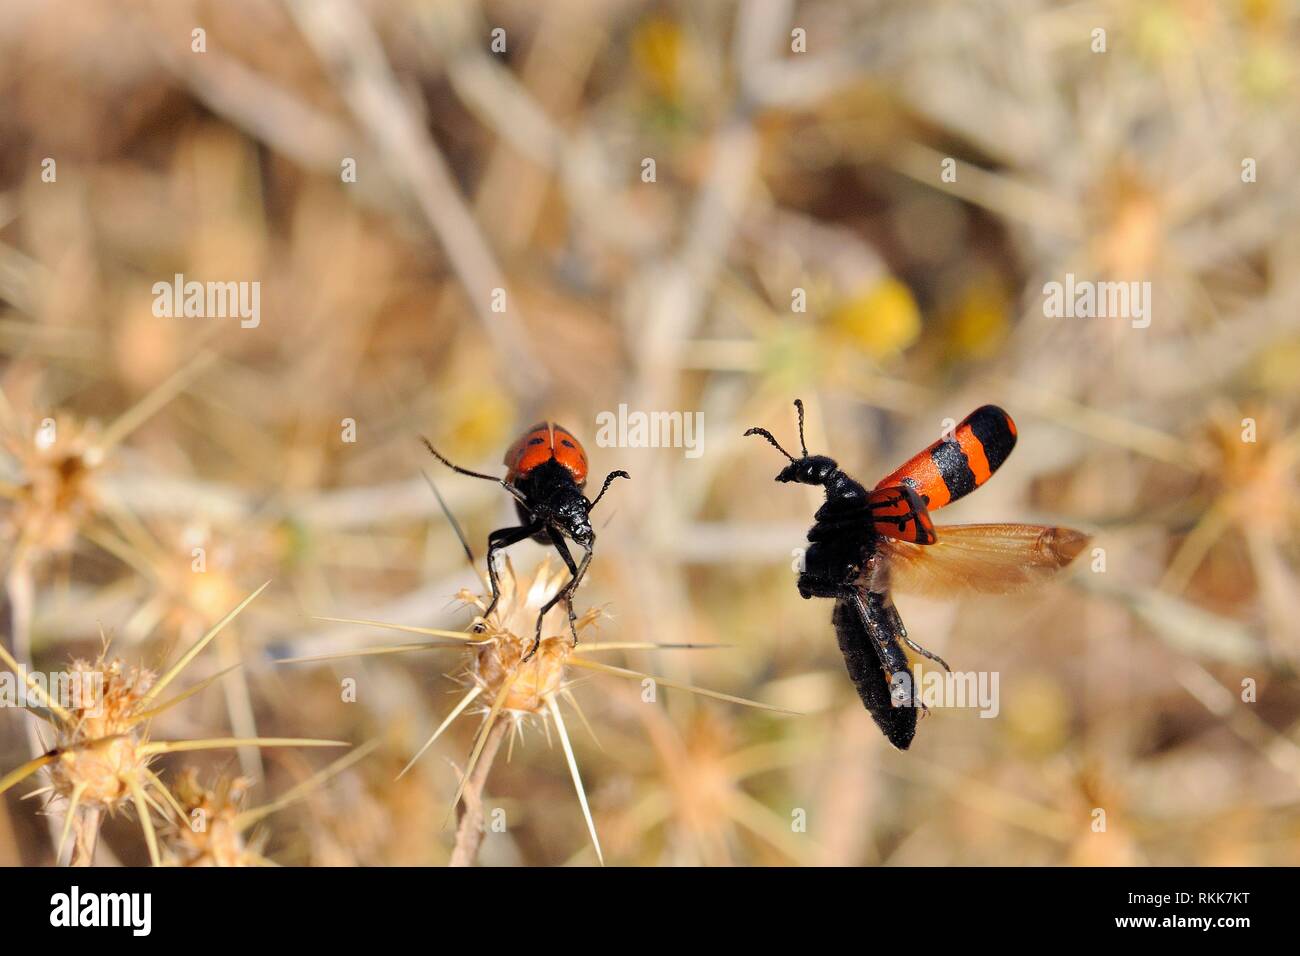 Blister Käfer (Mylabris quadripunctata) schwebt in der Nähe einer anderen vor der Landung in der Nähe. Lesbos, Griechenland. Giftige blister Käfer der Gattung oft Aggregat Stockfoto